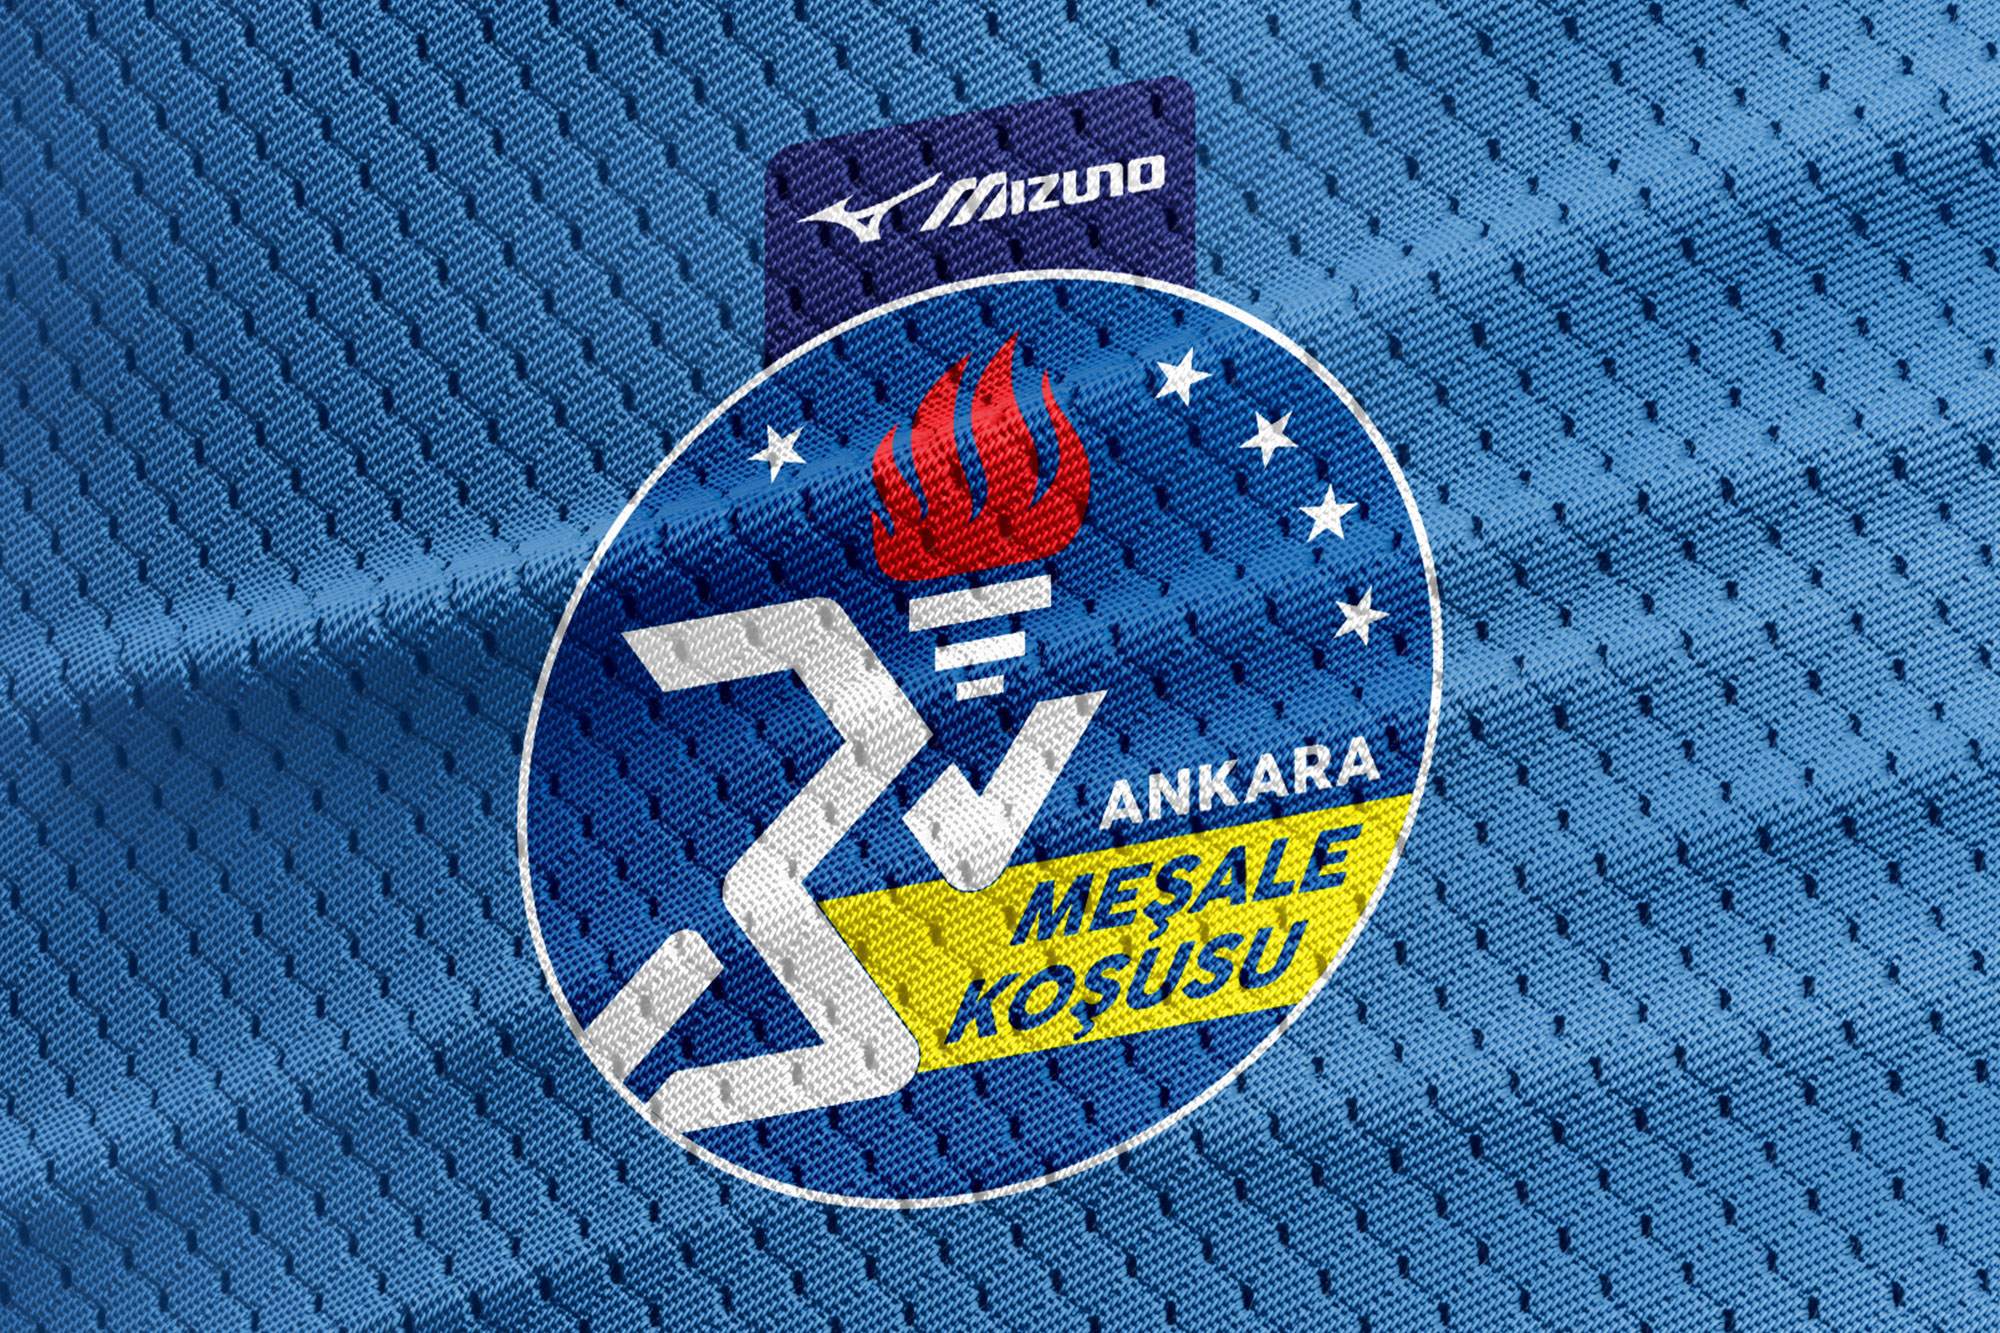 TED Ankara Kolejliler Spor Kulübü Mizuno Ankara Meşale Koşusu Logo Tasarımı